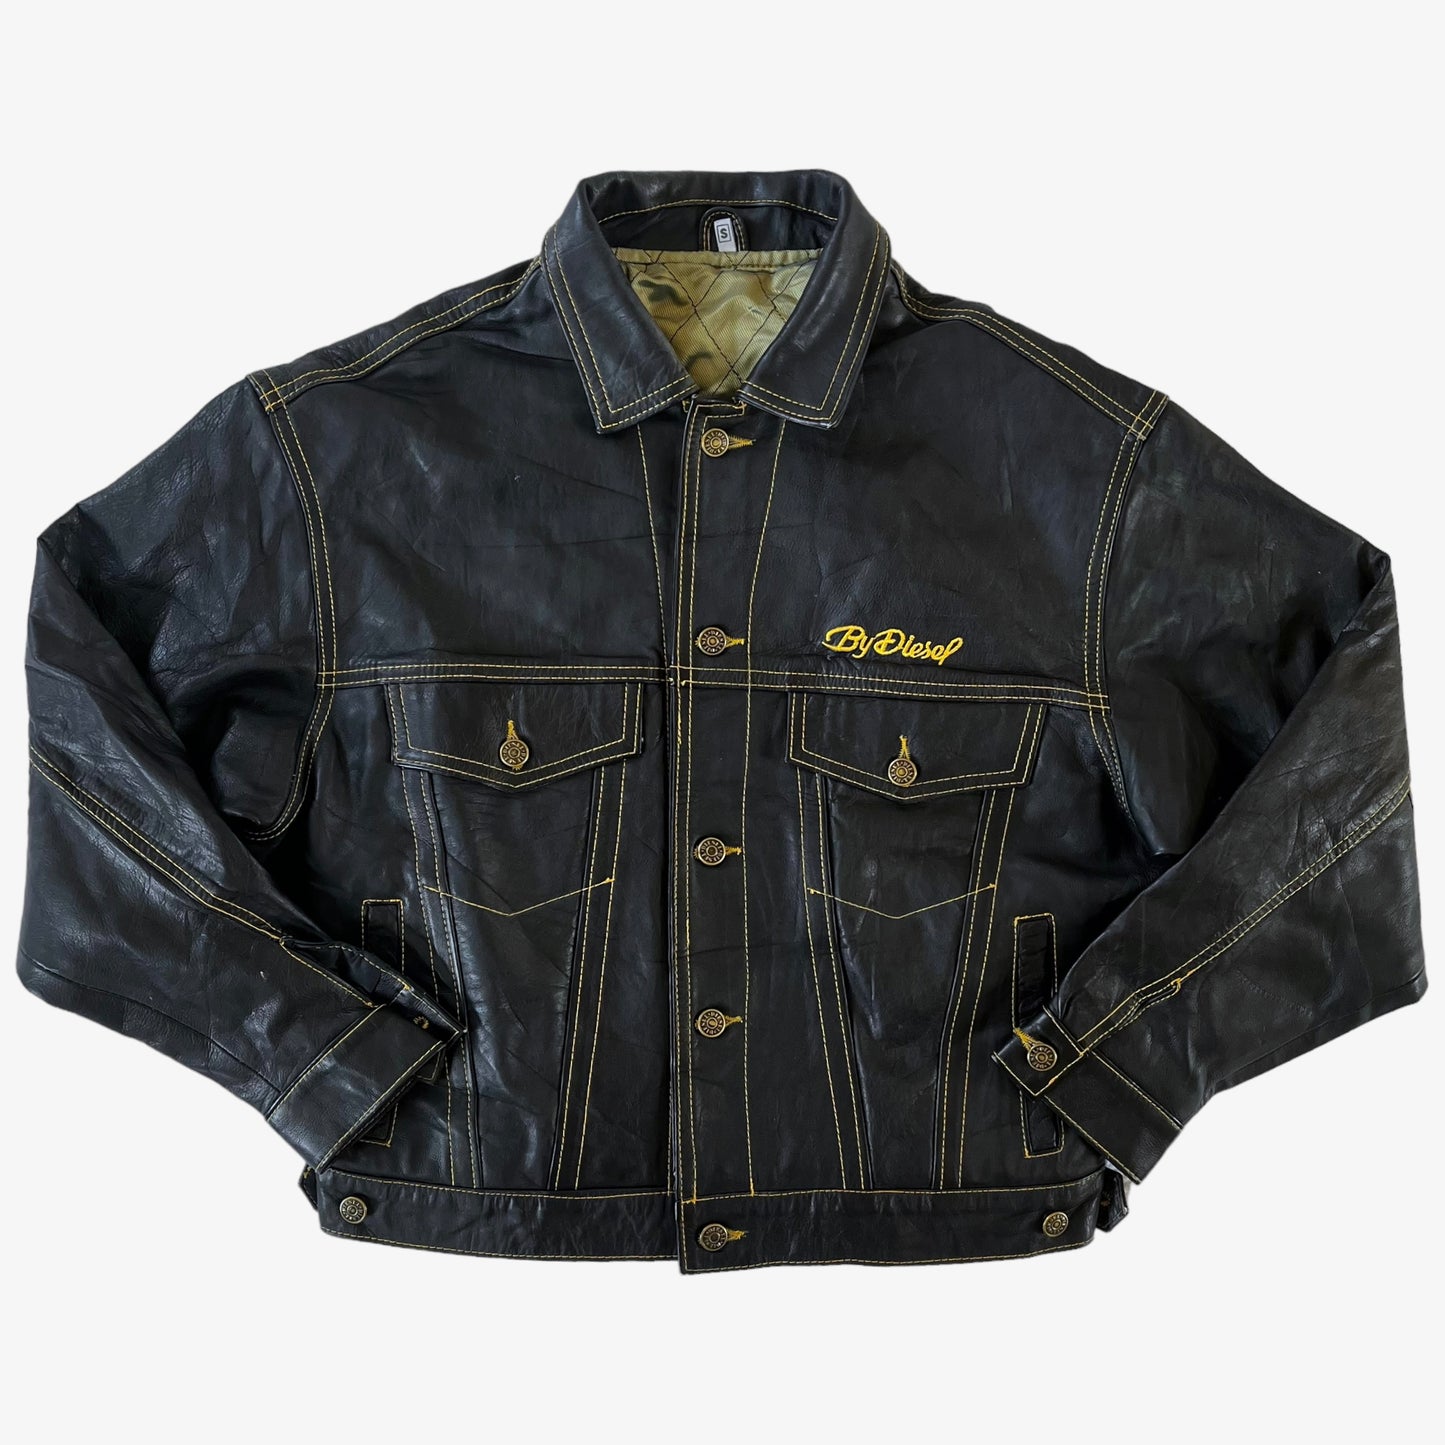 Vintage 90s Diesel Black Leather Trucker Jacket - Casspio's Dream